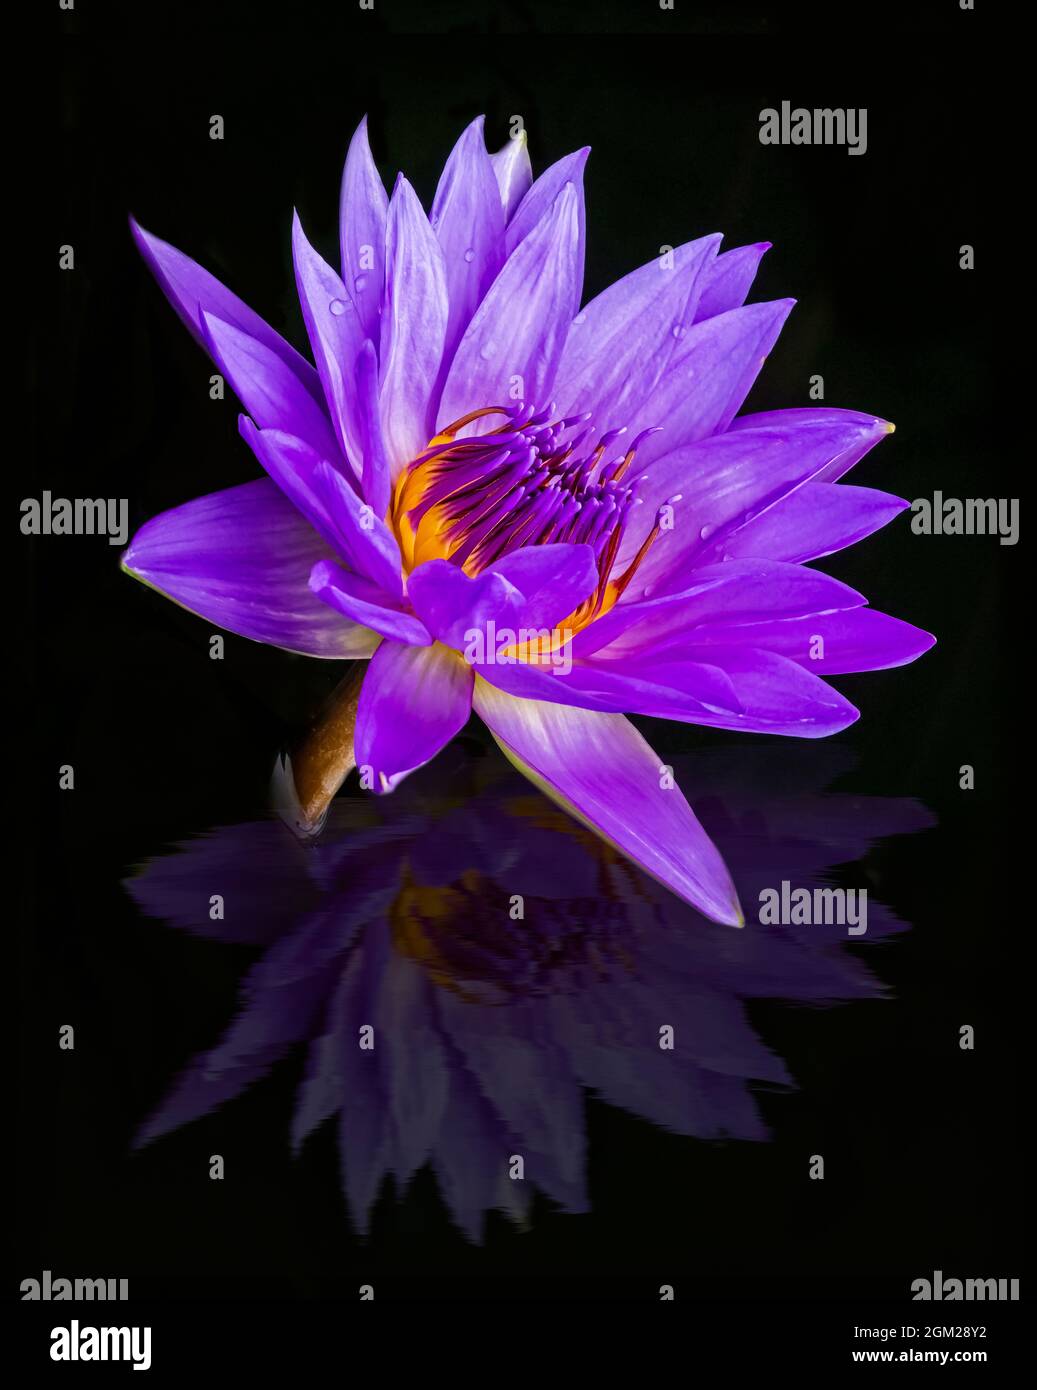 Reflektierende Wasserlilie - Eine frisch blühende, unberührte Lavendel- und gelbe Wasserlilie mit Spiegelung. Dieses Bild ist auch in Schwarzweiß verfügbar. Stockfoto